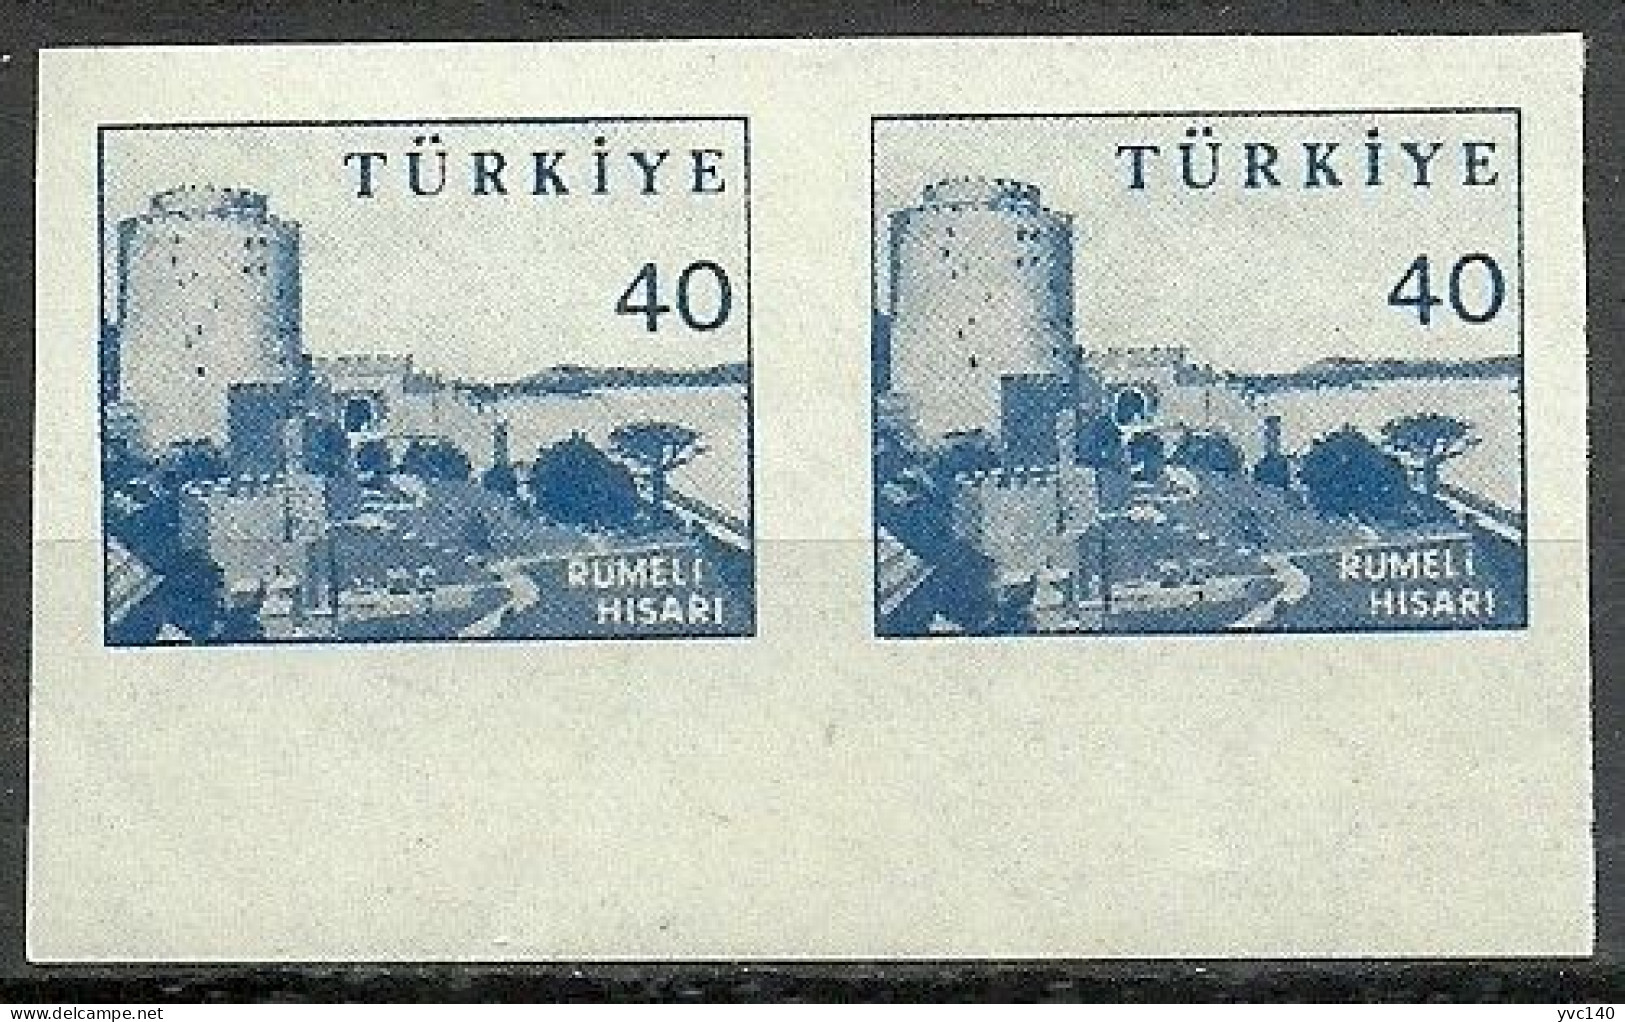 Turkey; 1959 Pictorial Postage Stamp 40 K. ERROR "Imperf. Pair" - Ongebruikt